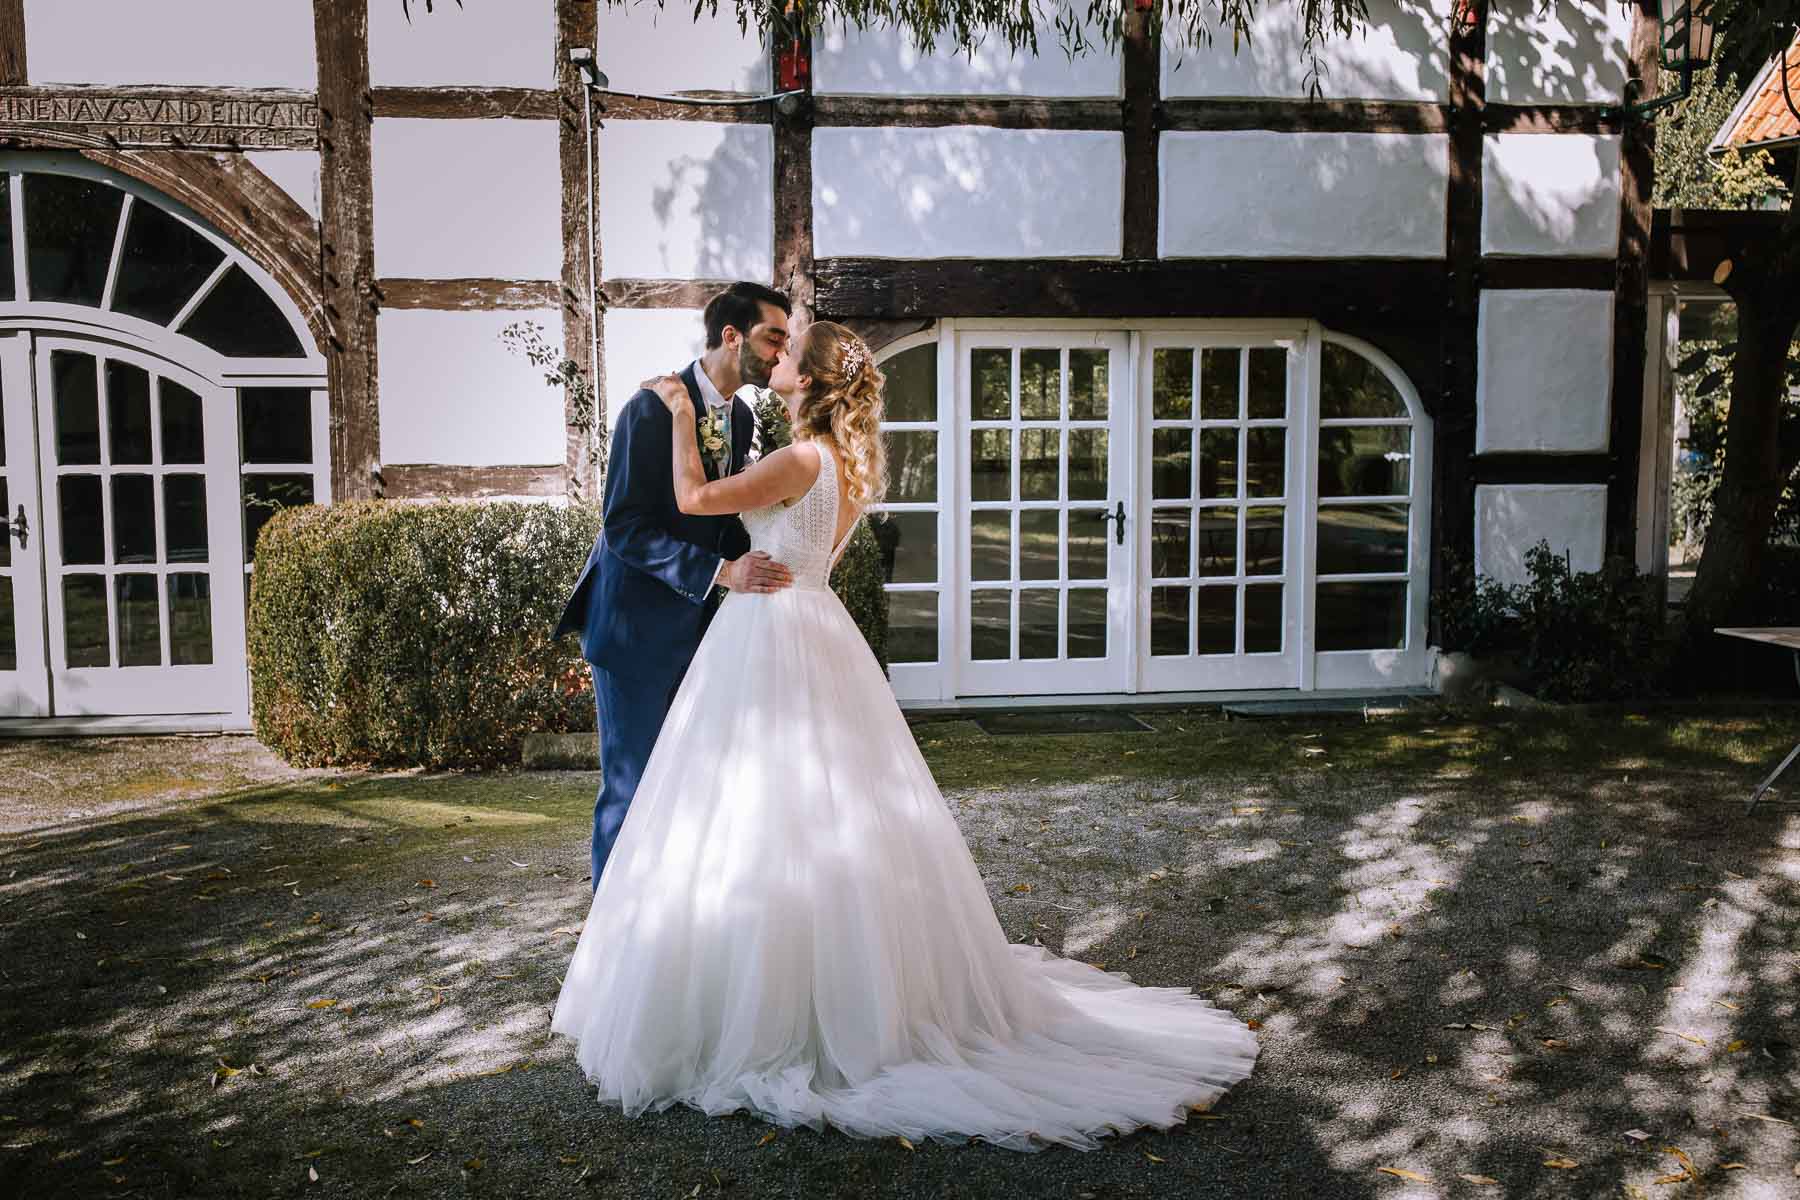 Hochzeitsfotografin-sauerland-deutsch-spanische-hochzeit-boda-aleman-espanol-casarse-en-alemana-fotografo-espanol-ruhrgebiet-hoefferhof-lippstadt-nrw